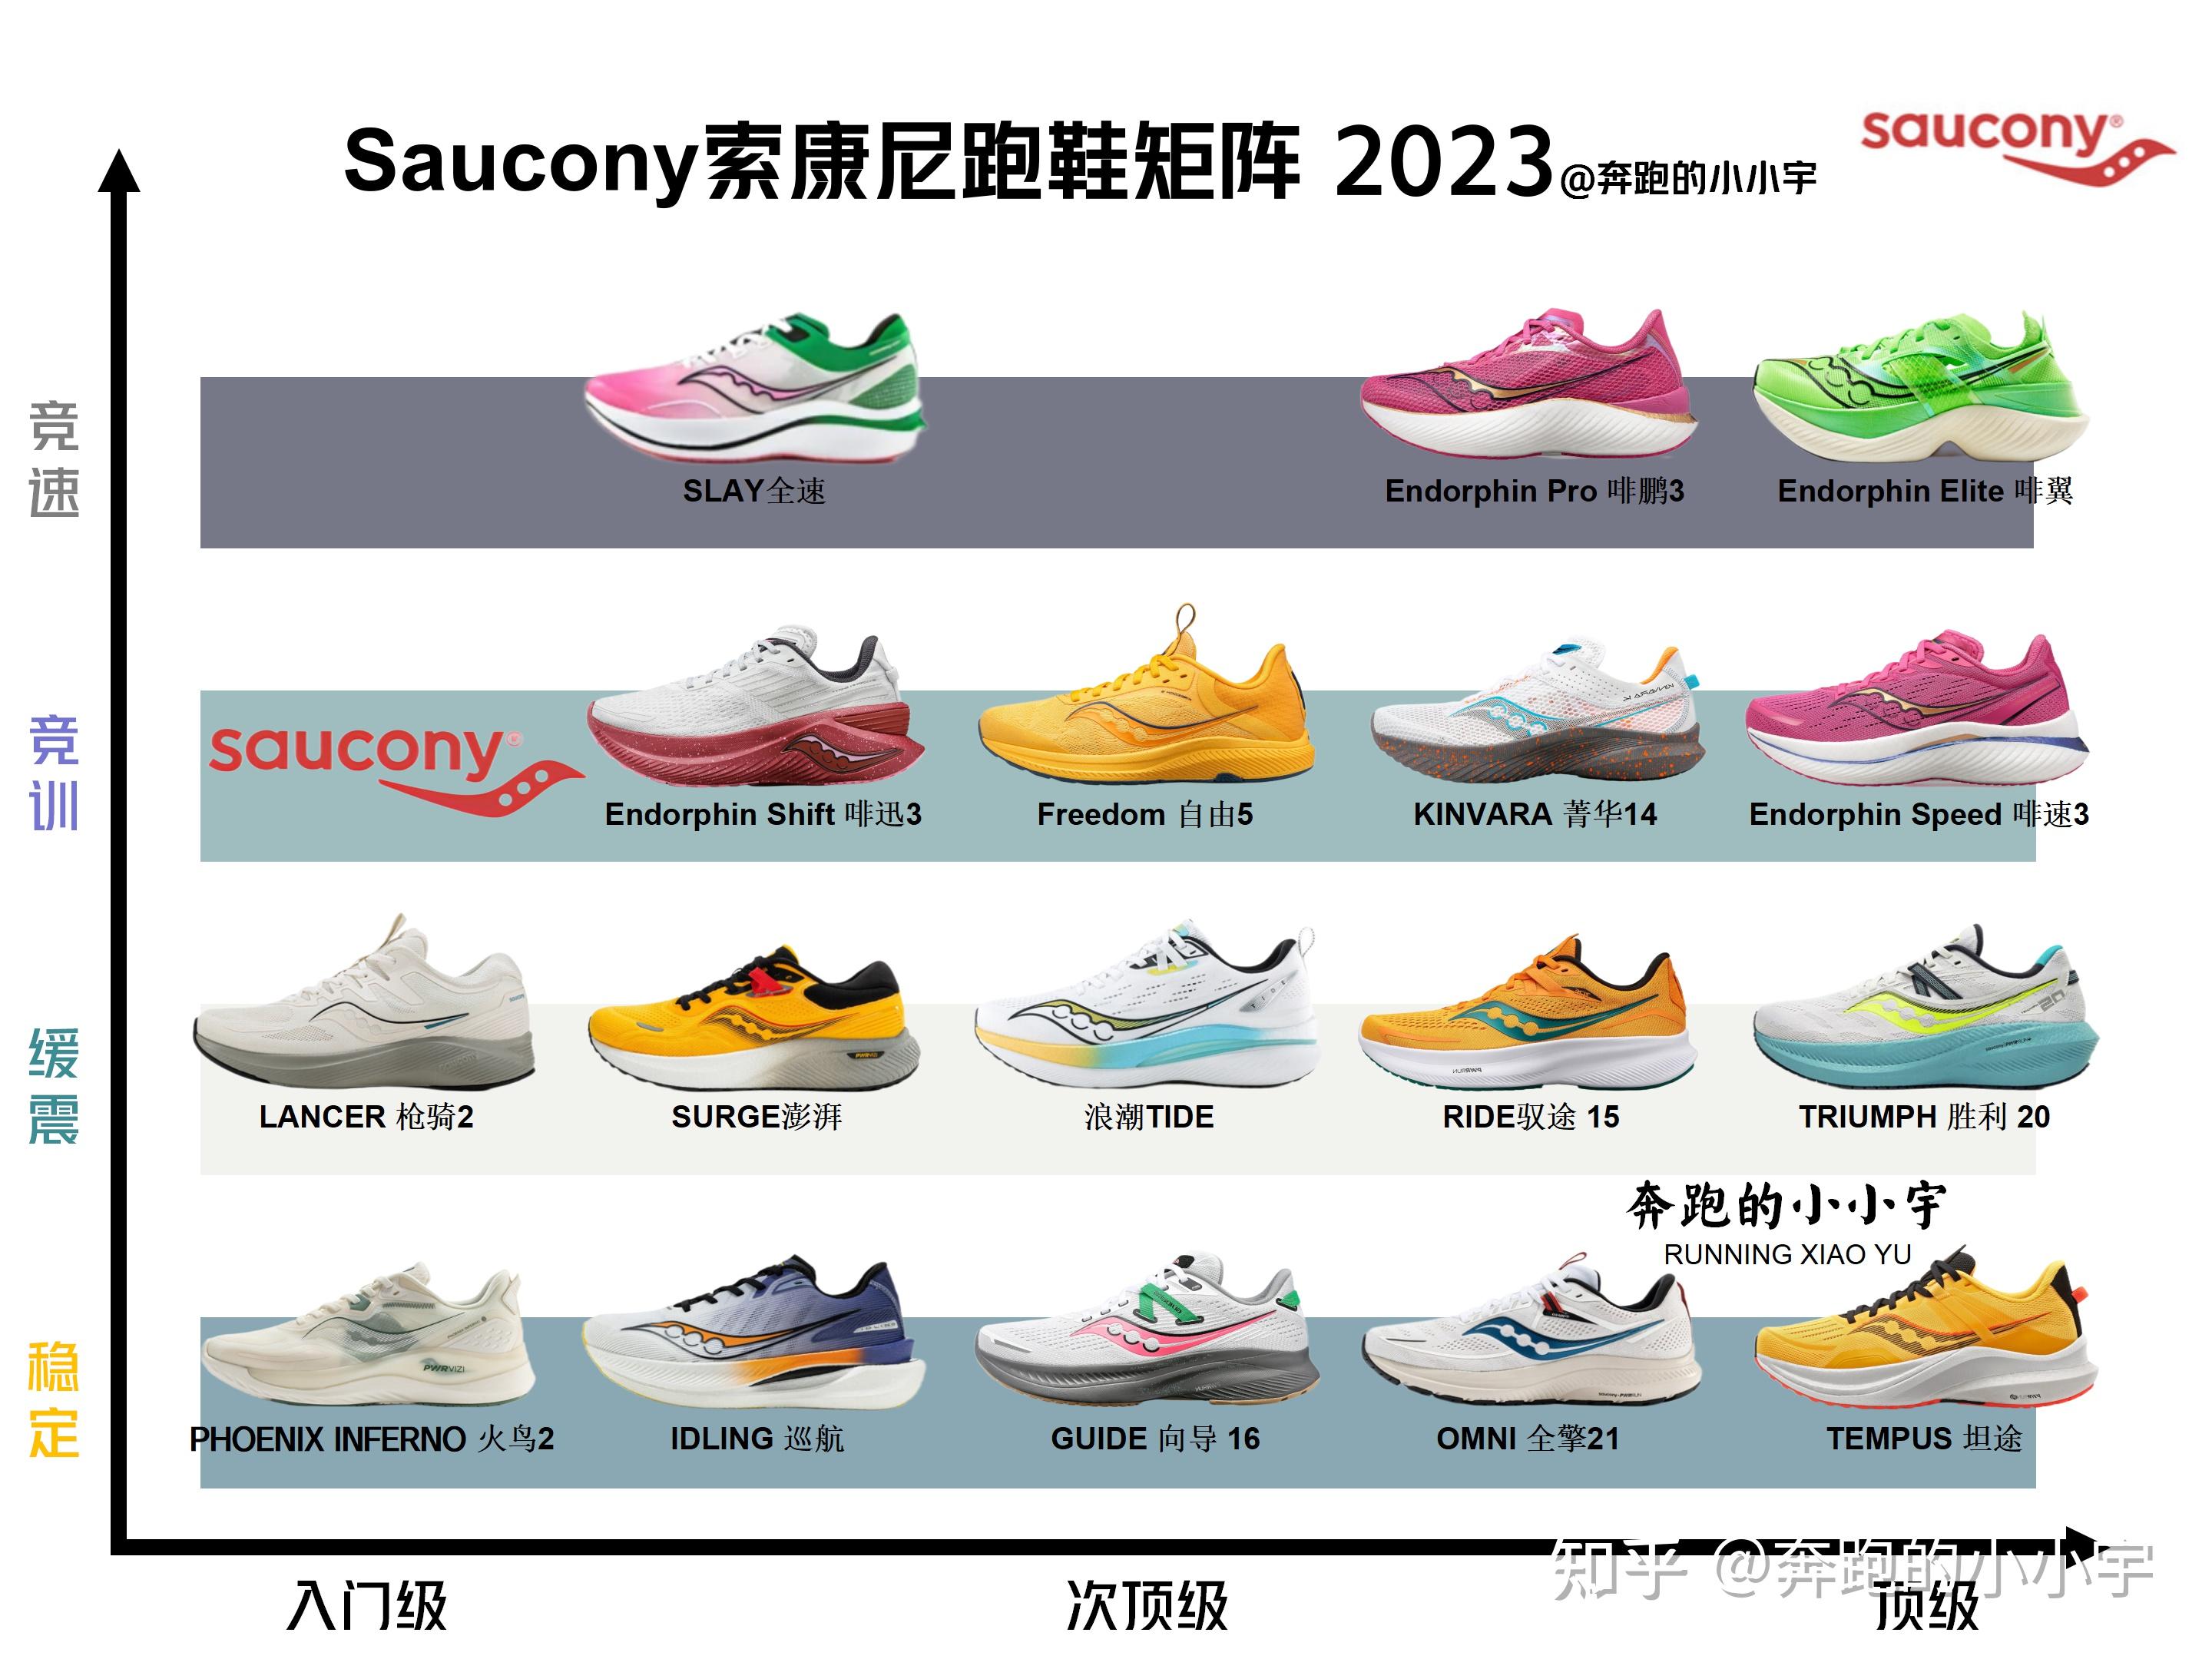 索康尼 Saucony跑鞋矩阵 2023 知乎